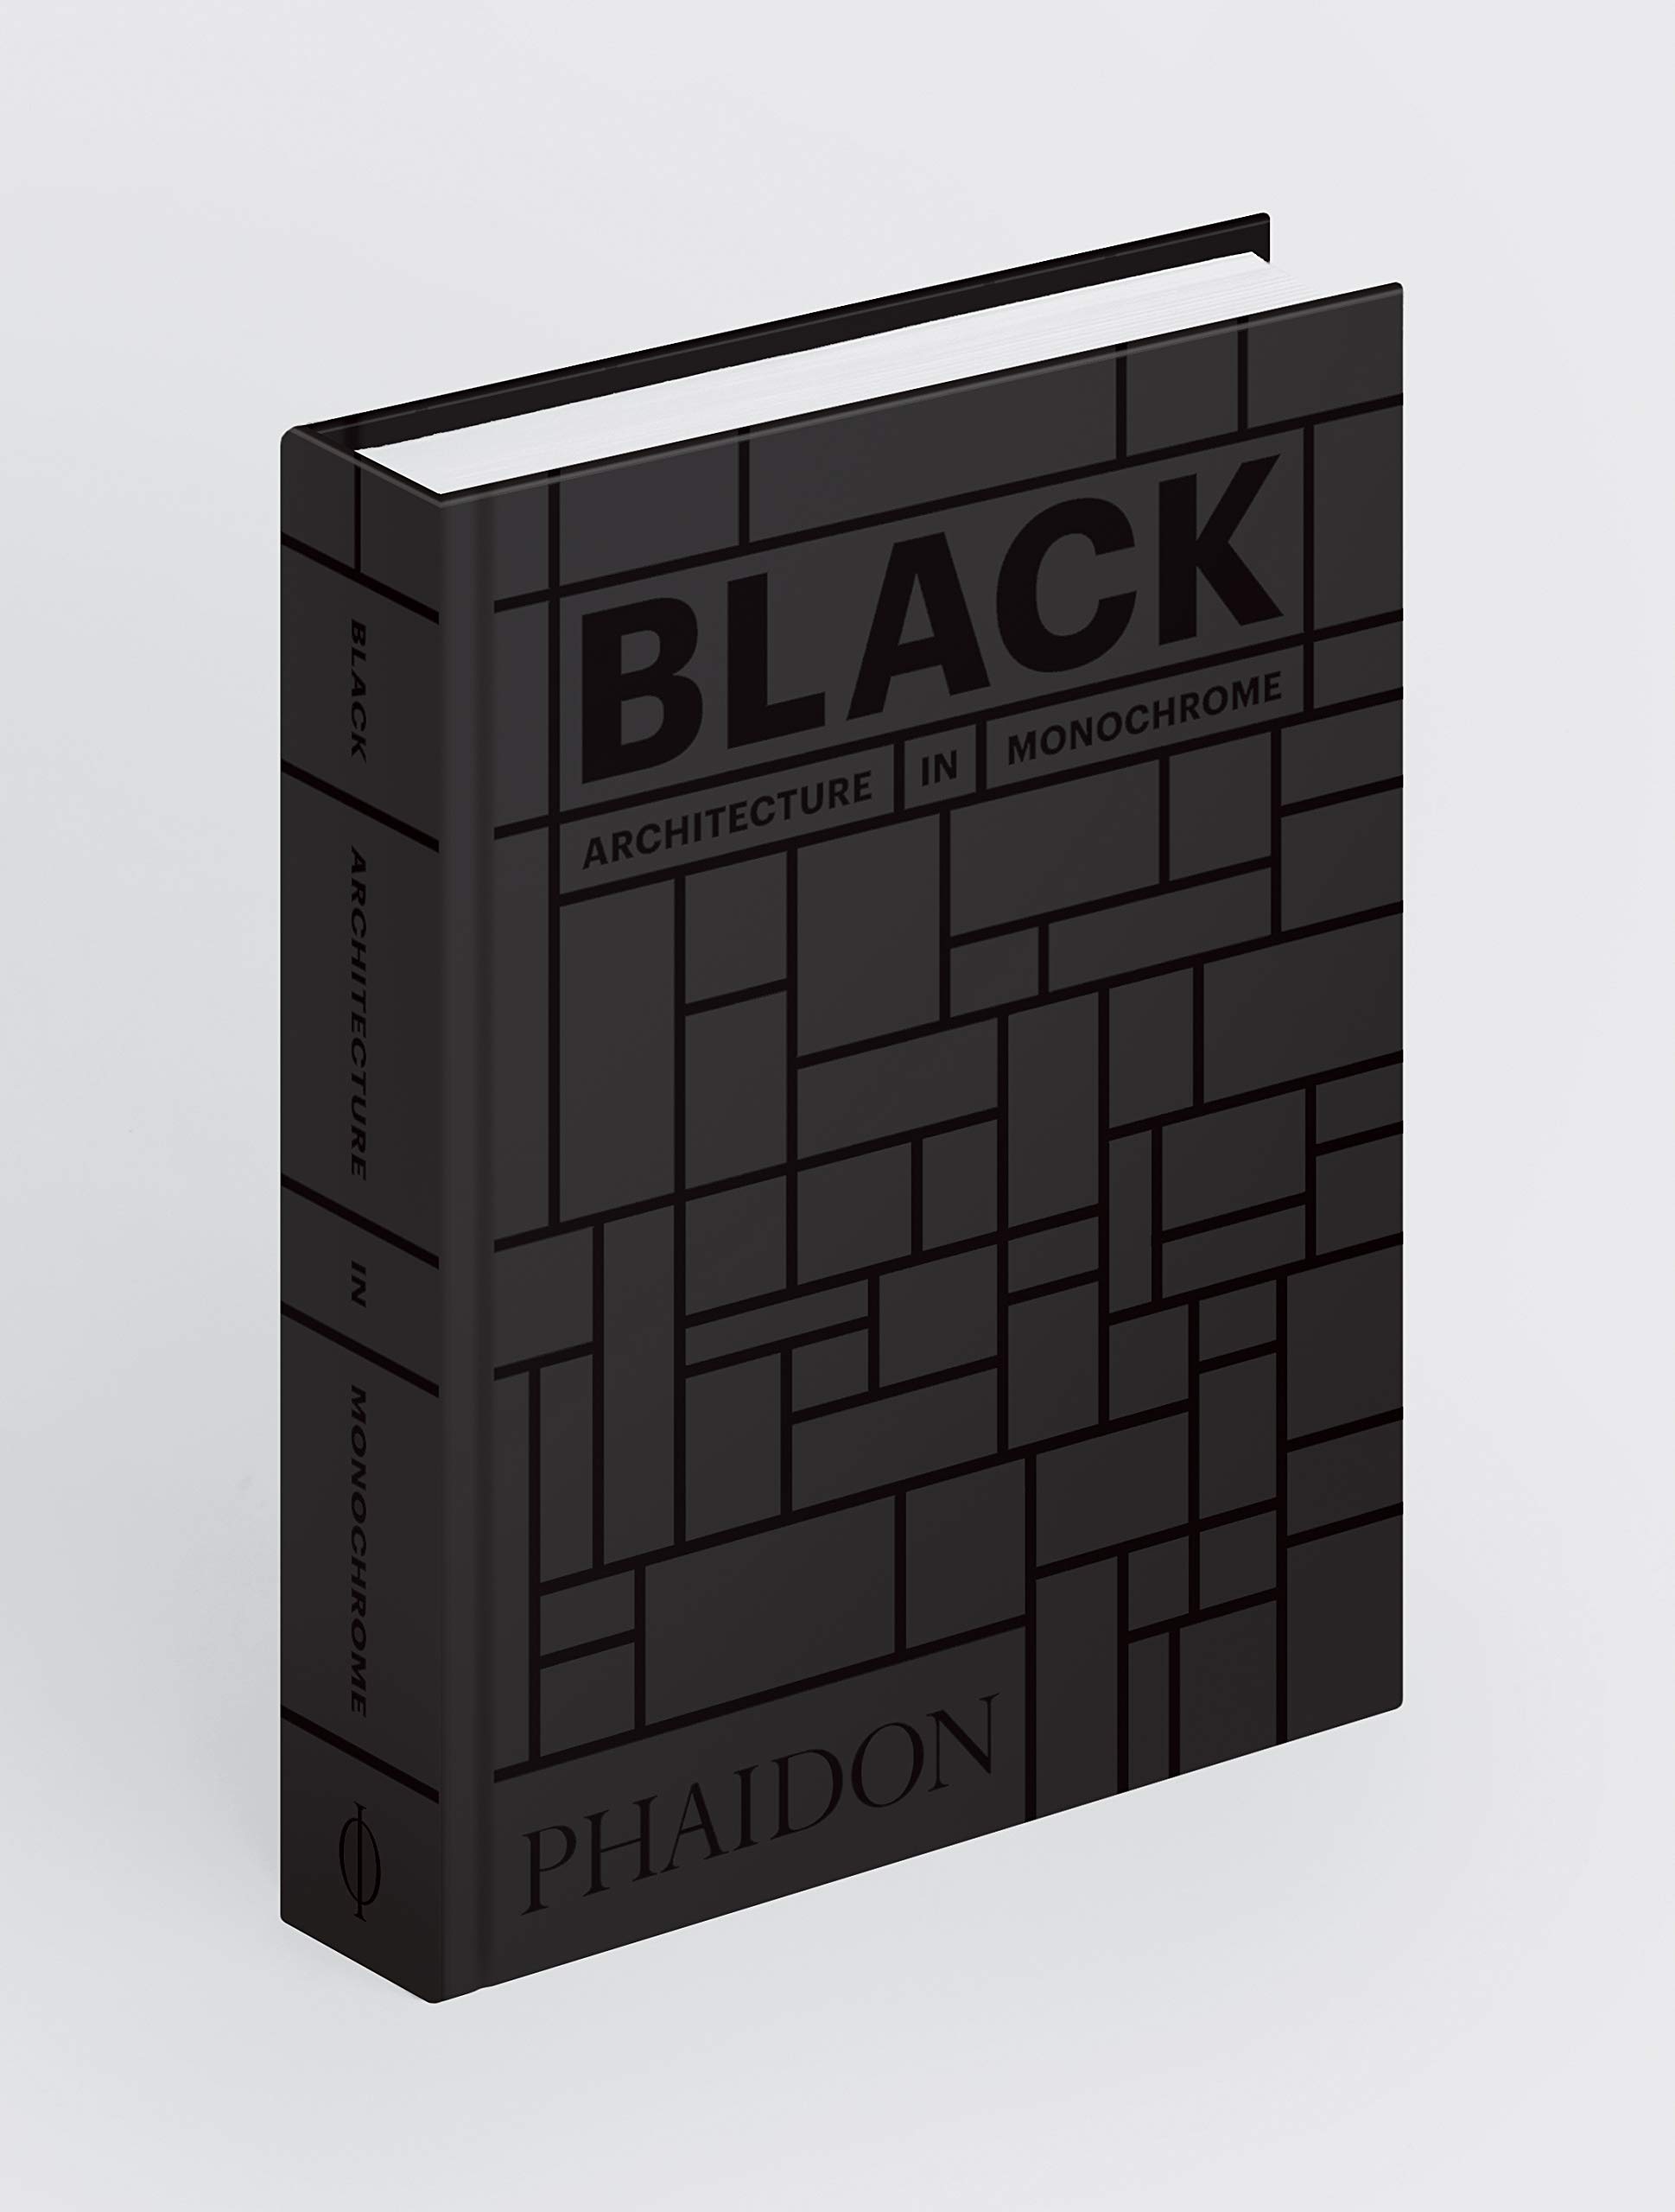 Black: Architecture in Monochrome mini 